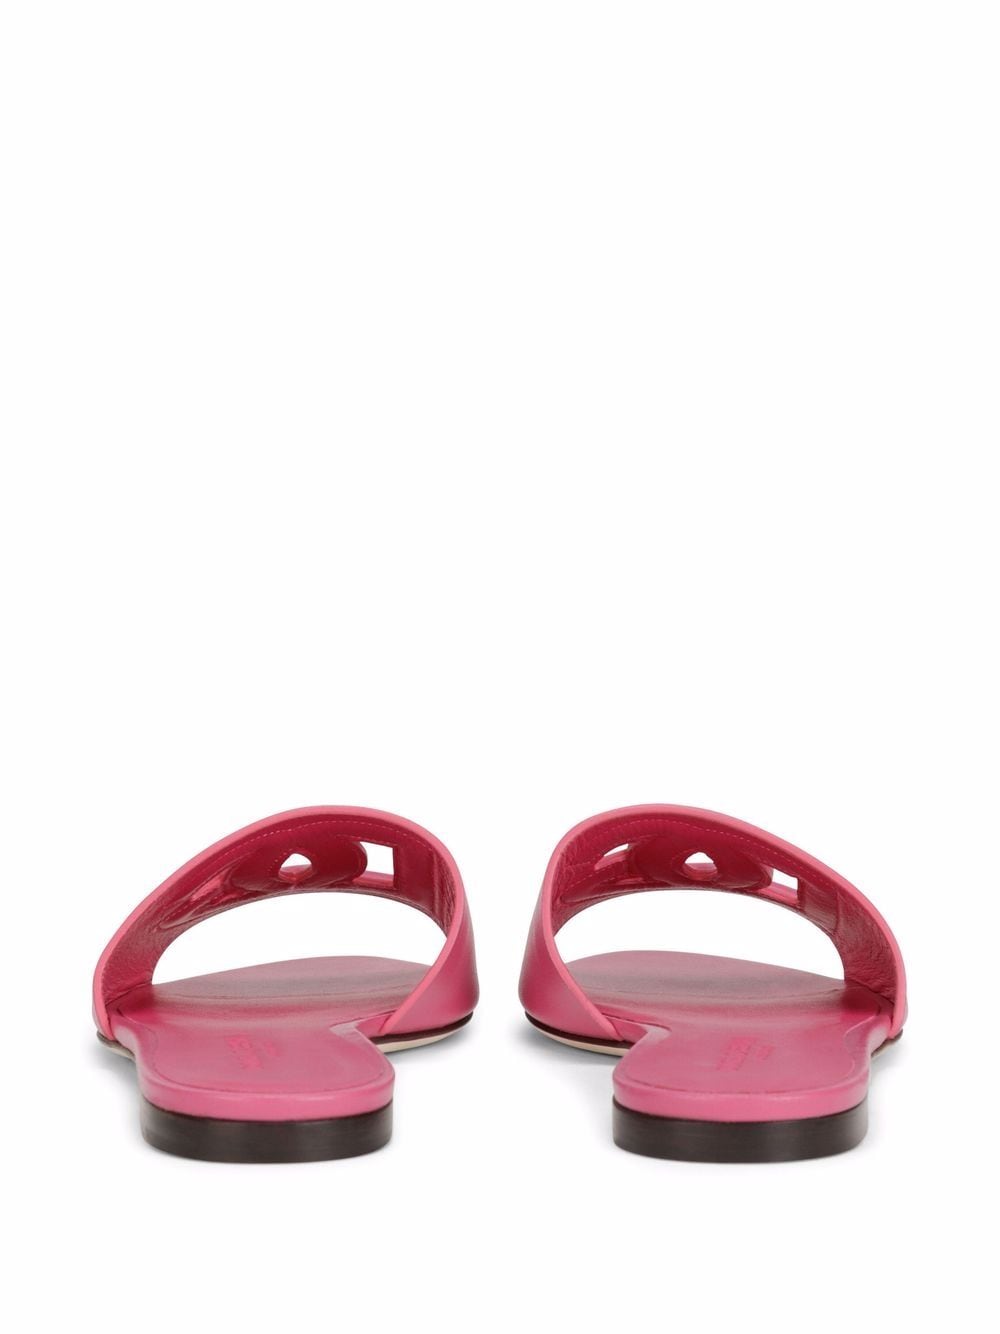 Sandali in pelle rosa con logo DG<br><br><br>